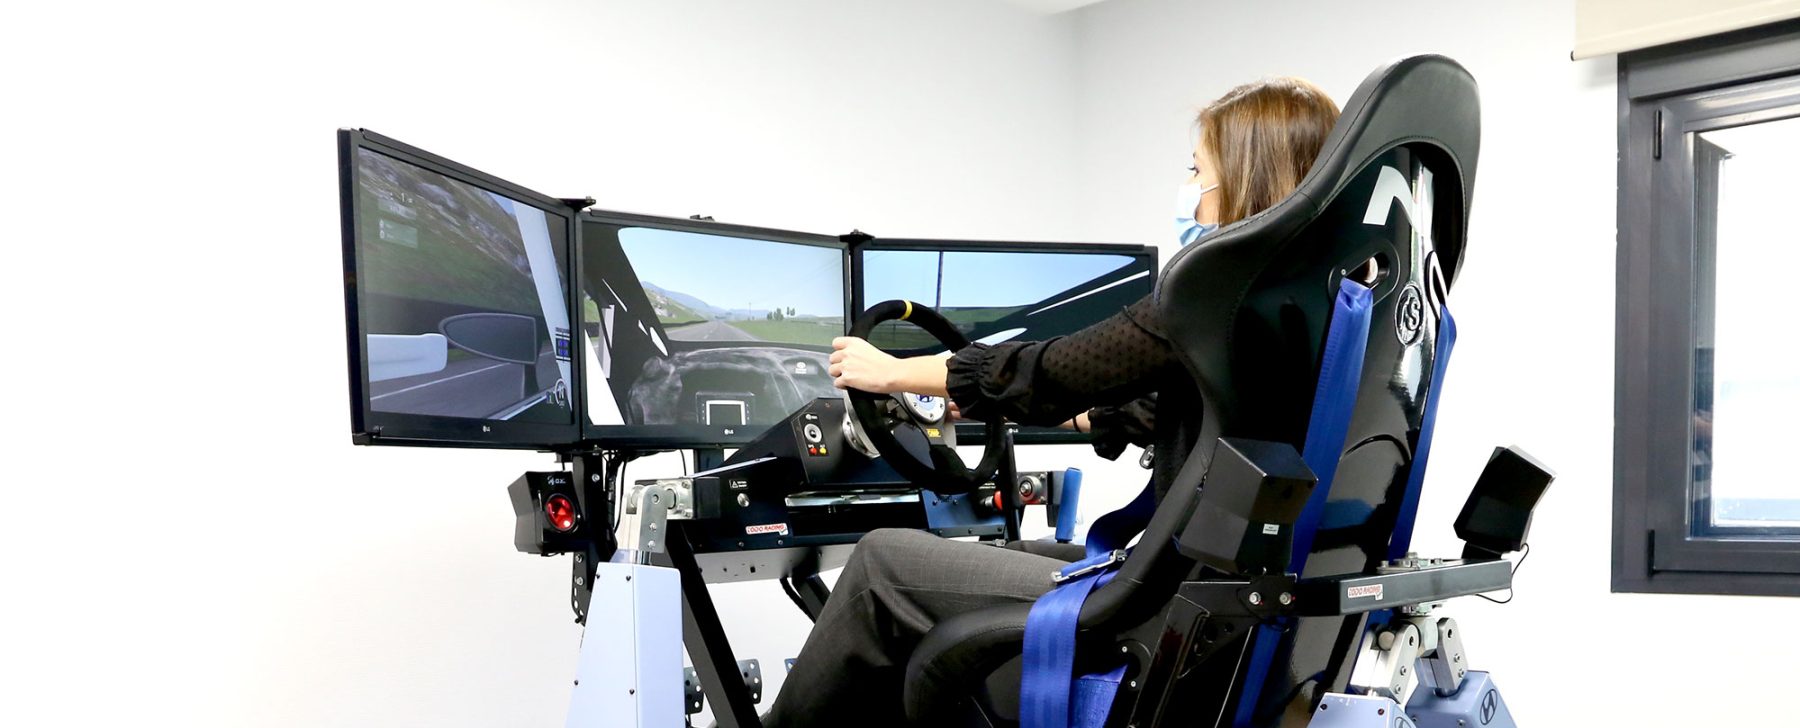 Fotografía de una mujer joven probando el simulador de conducción